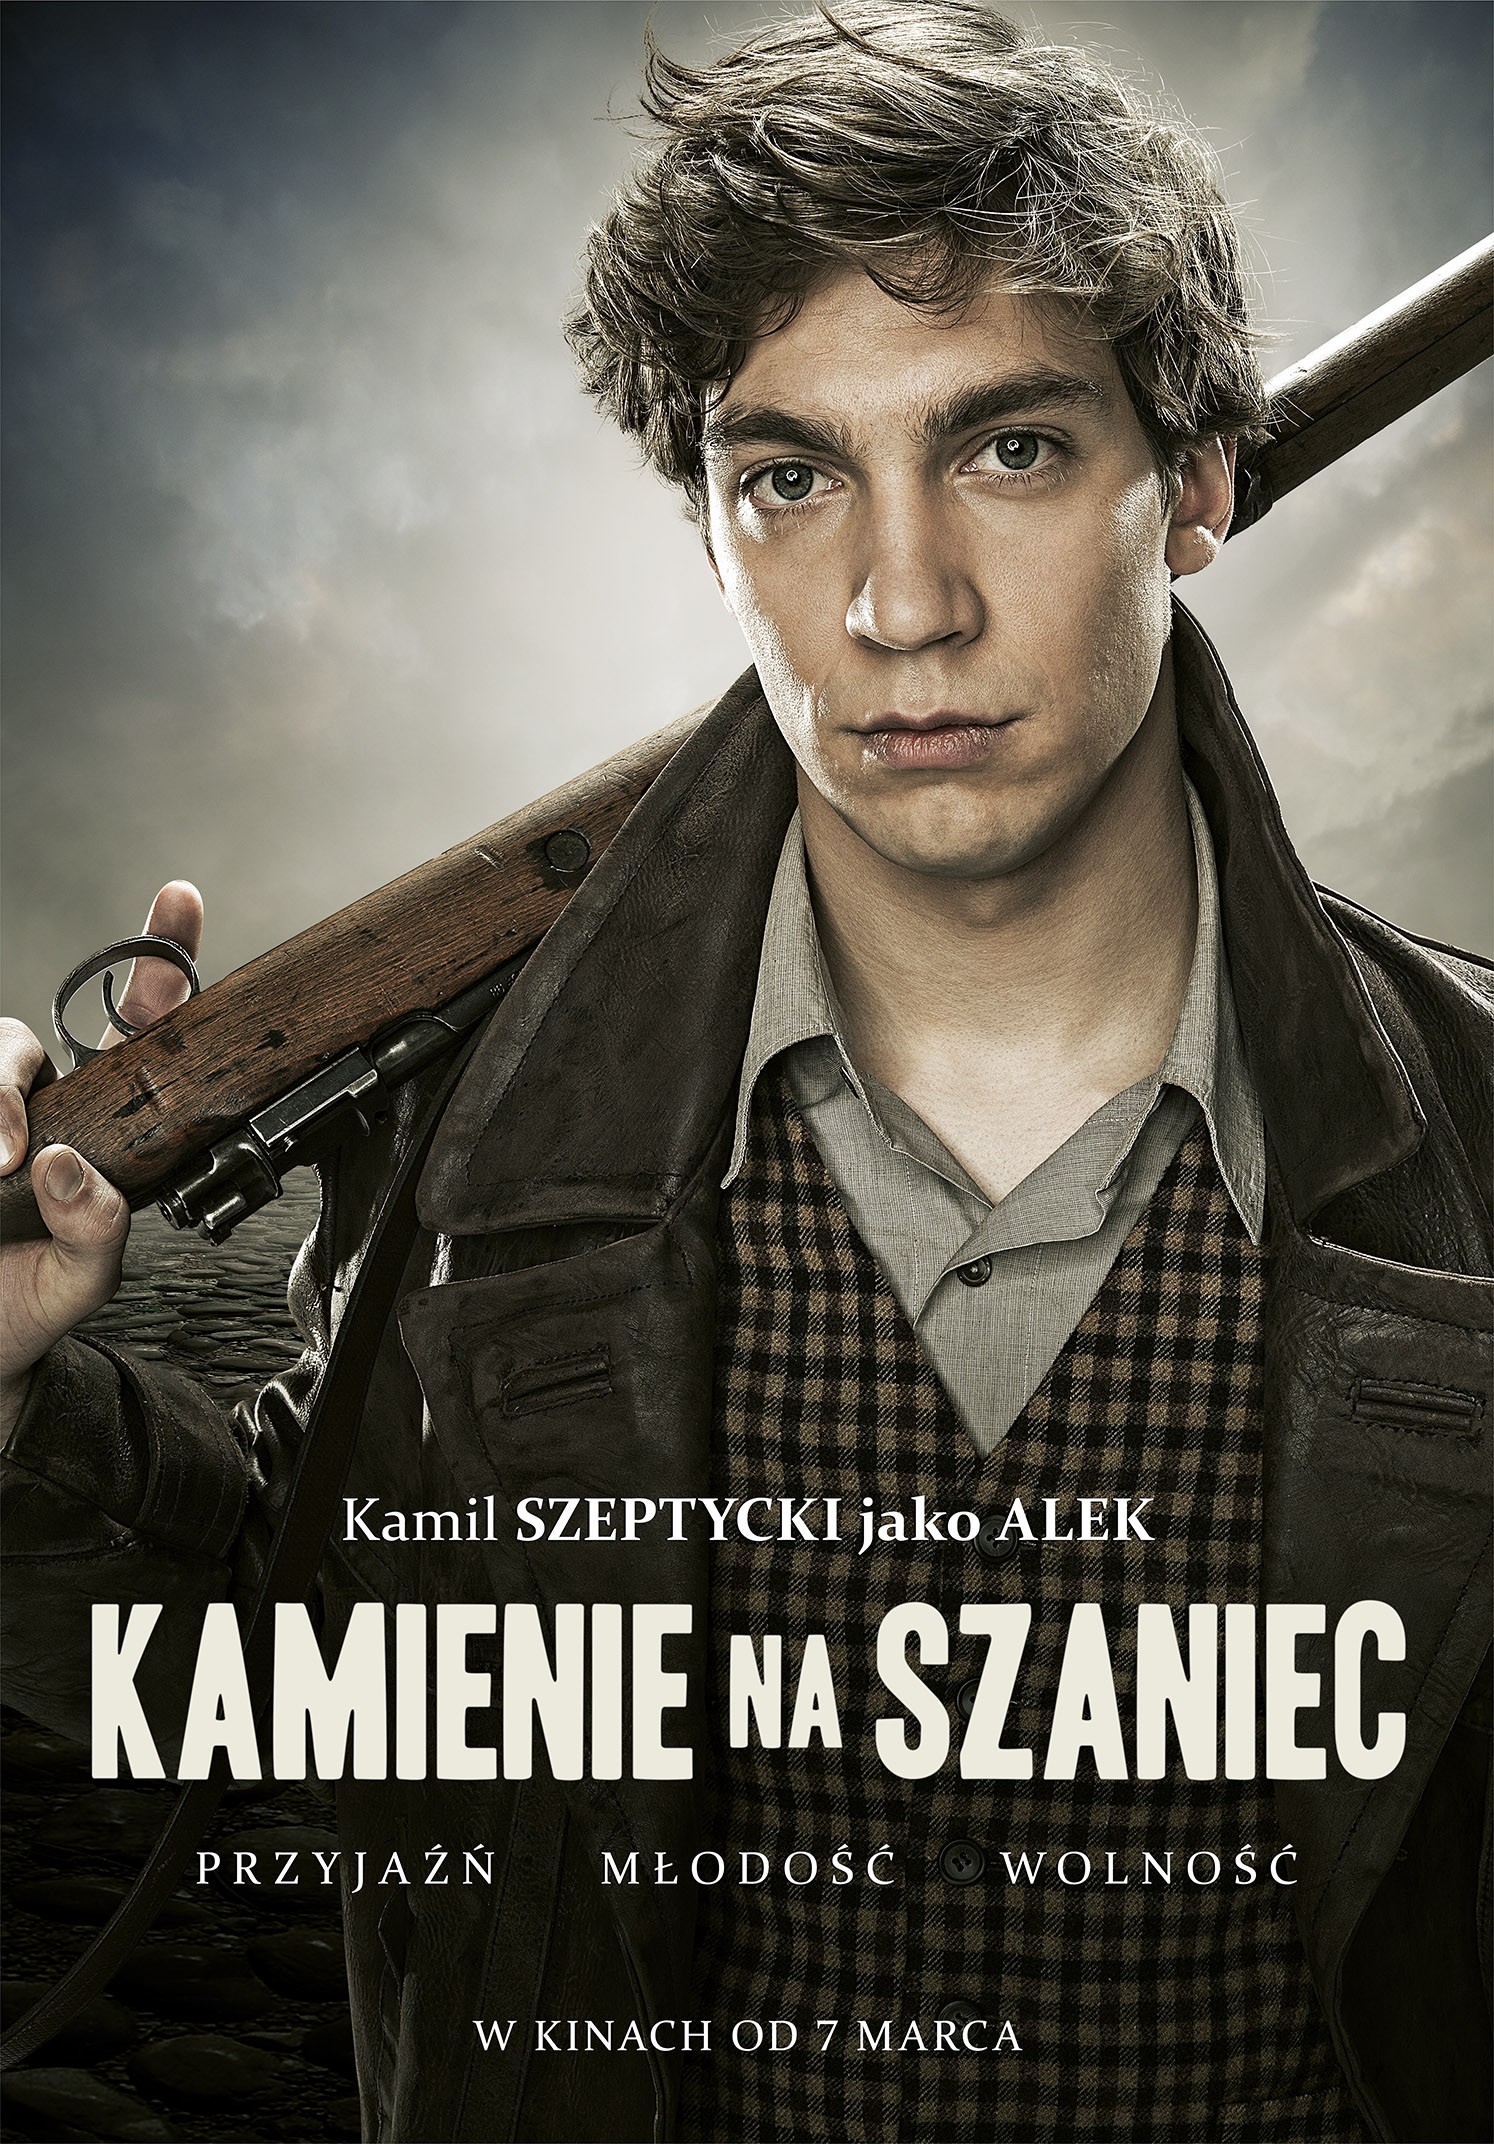 Mega Sized Movie Poster Image for Kamienie na szaniec (#3 of 8)